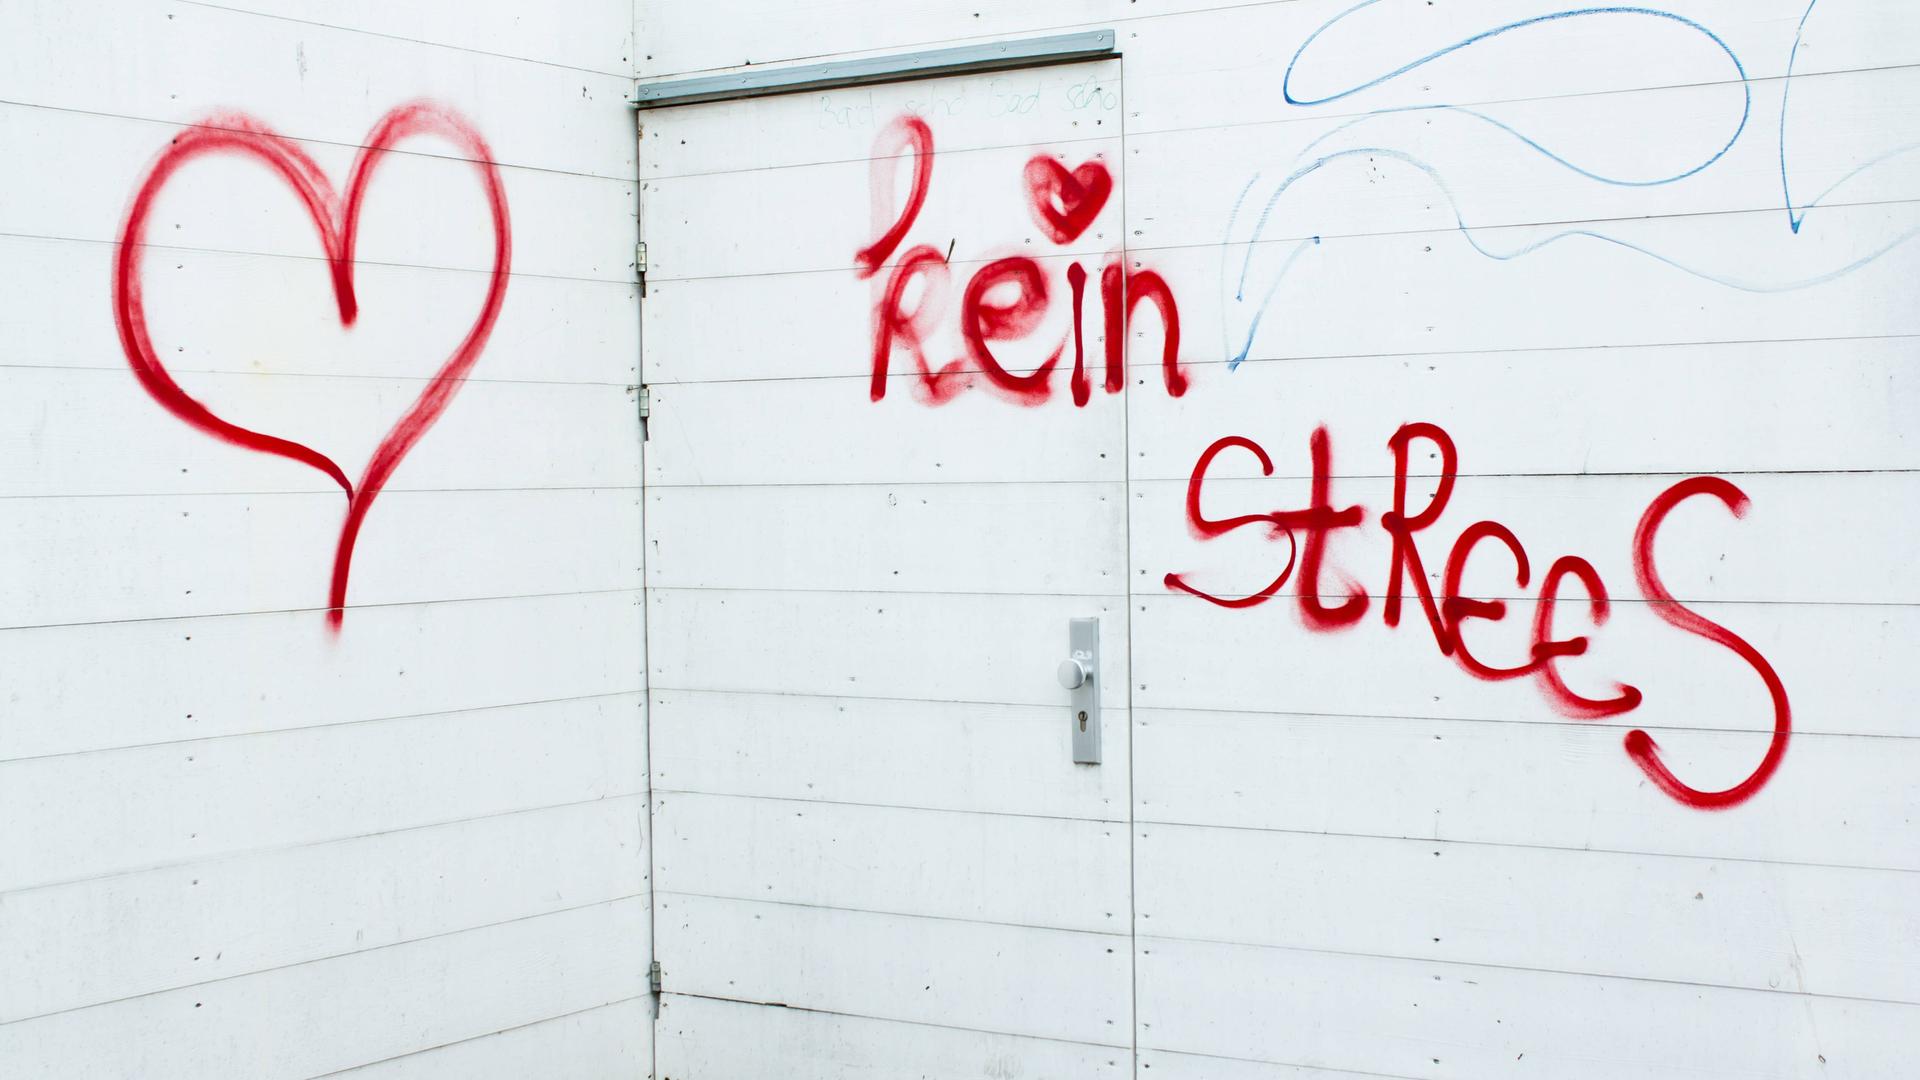 Ein rotes Graffiti an einer Wand: "Kein Strees" mit Herz daneben.